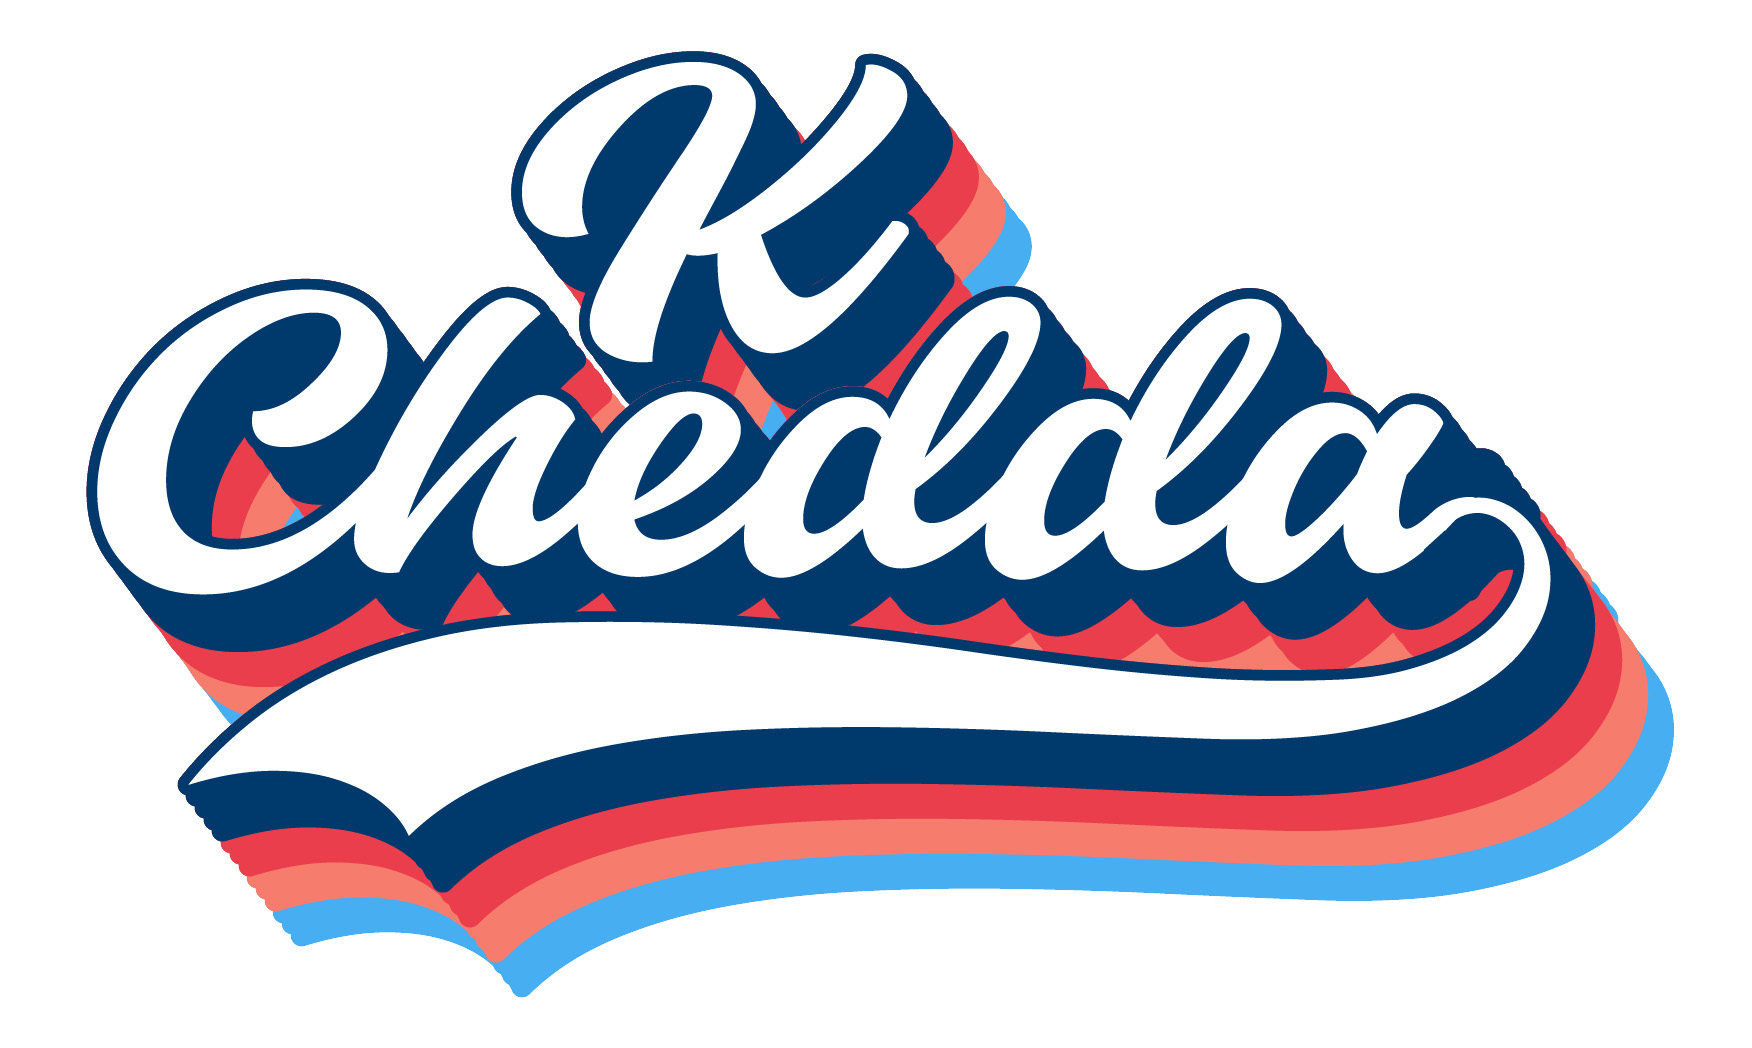 dj k chedda logo